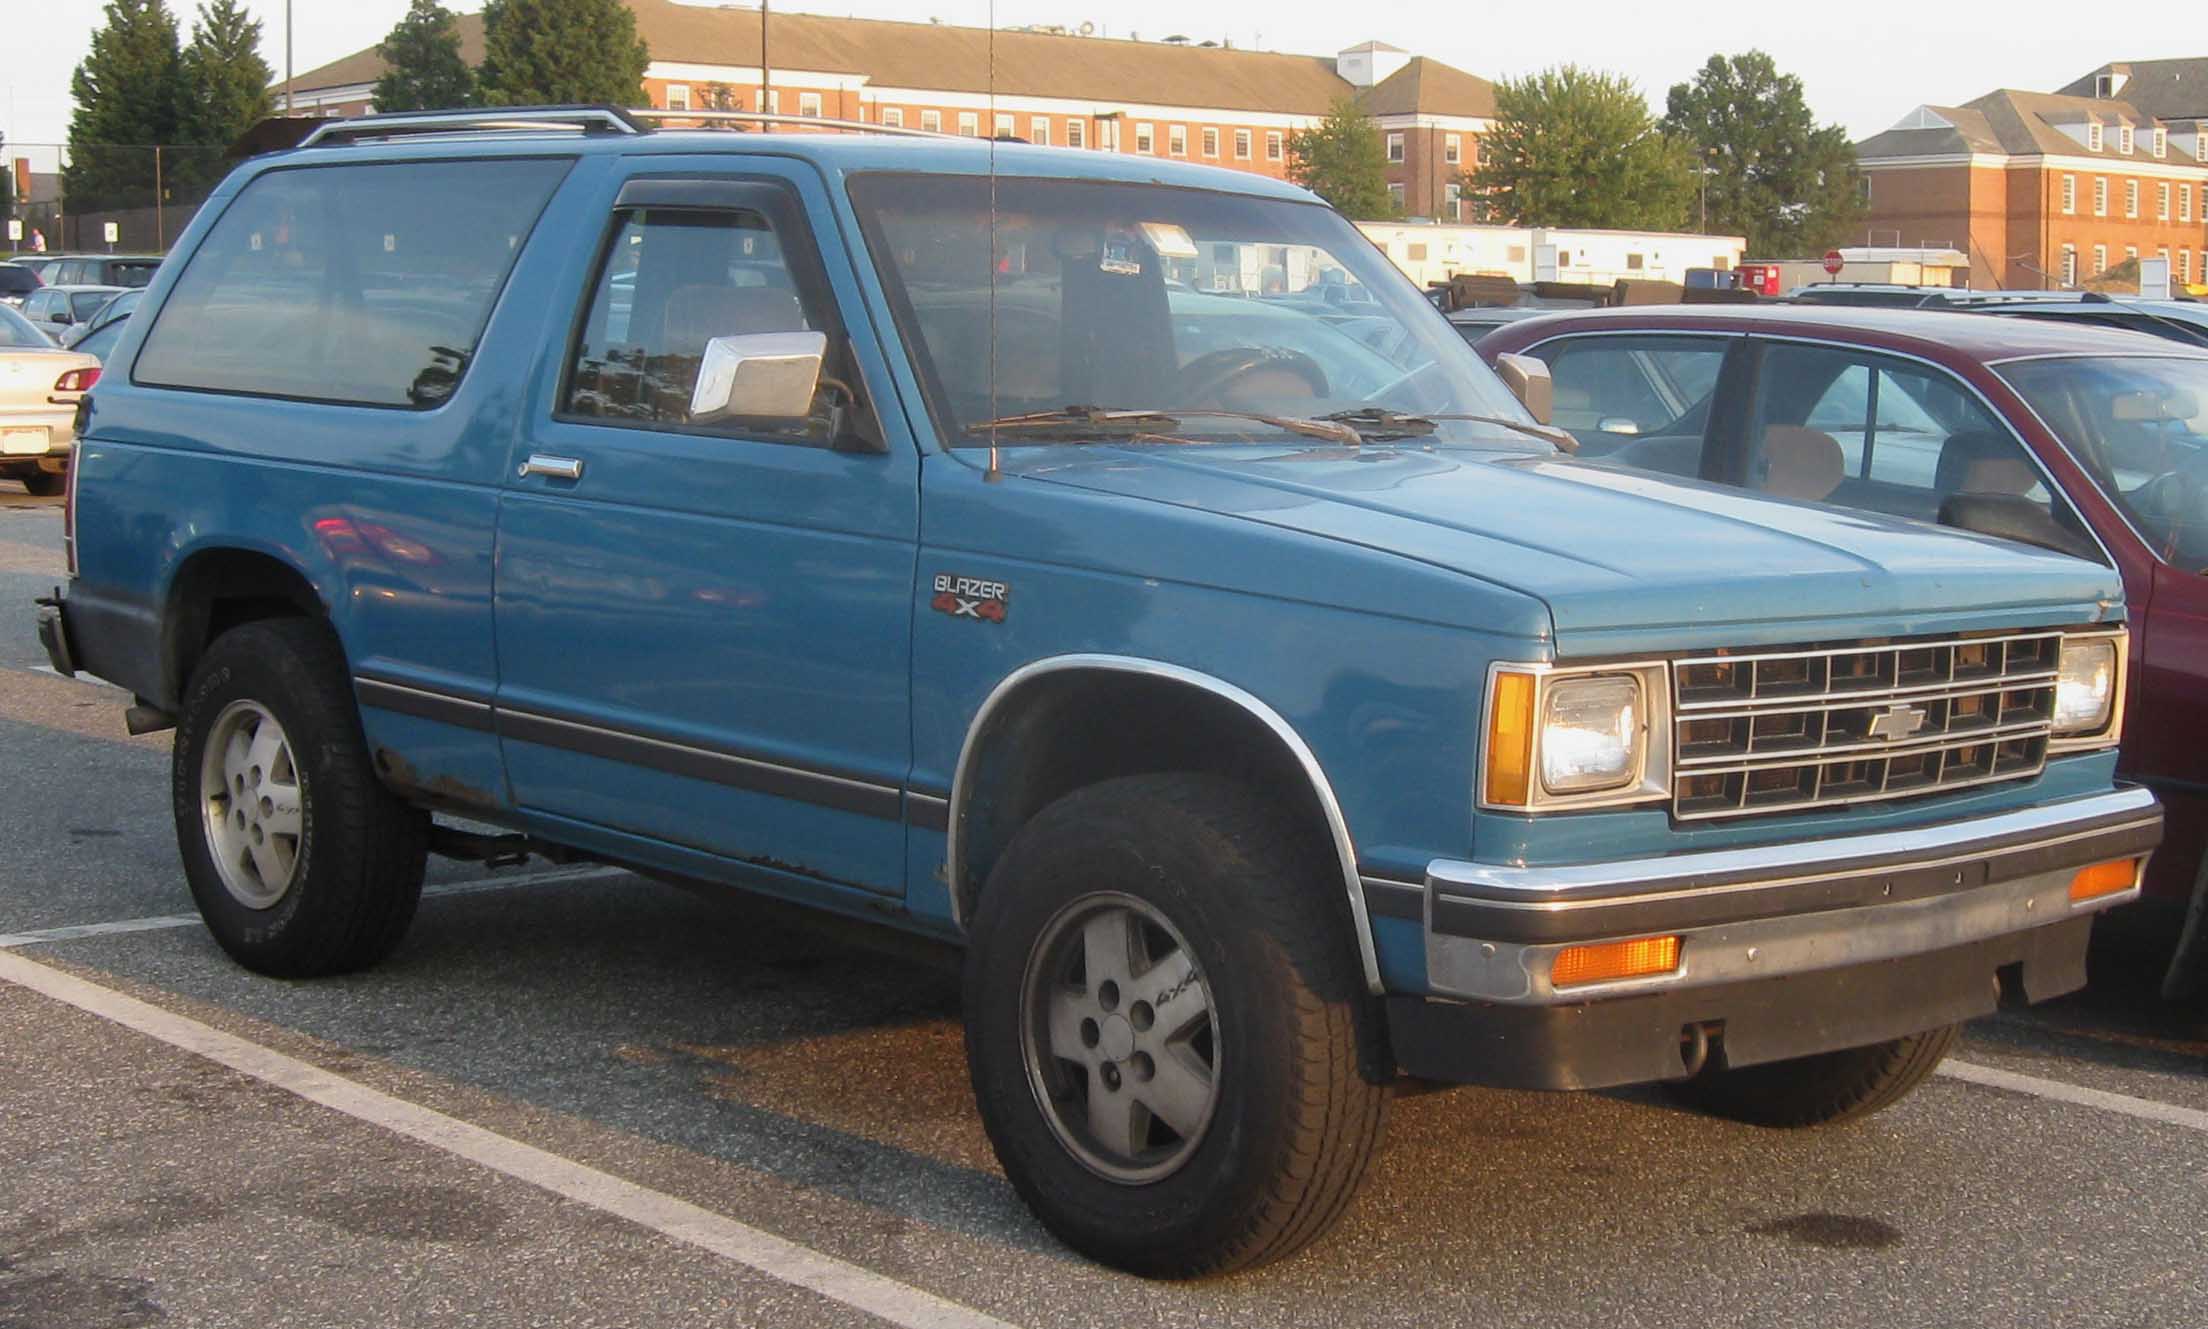 Chevrolet S-10 Blazer 1986 #5